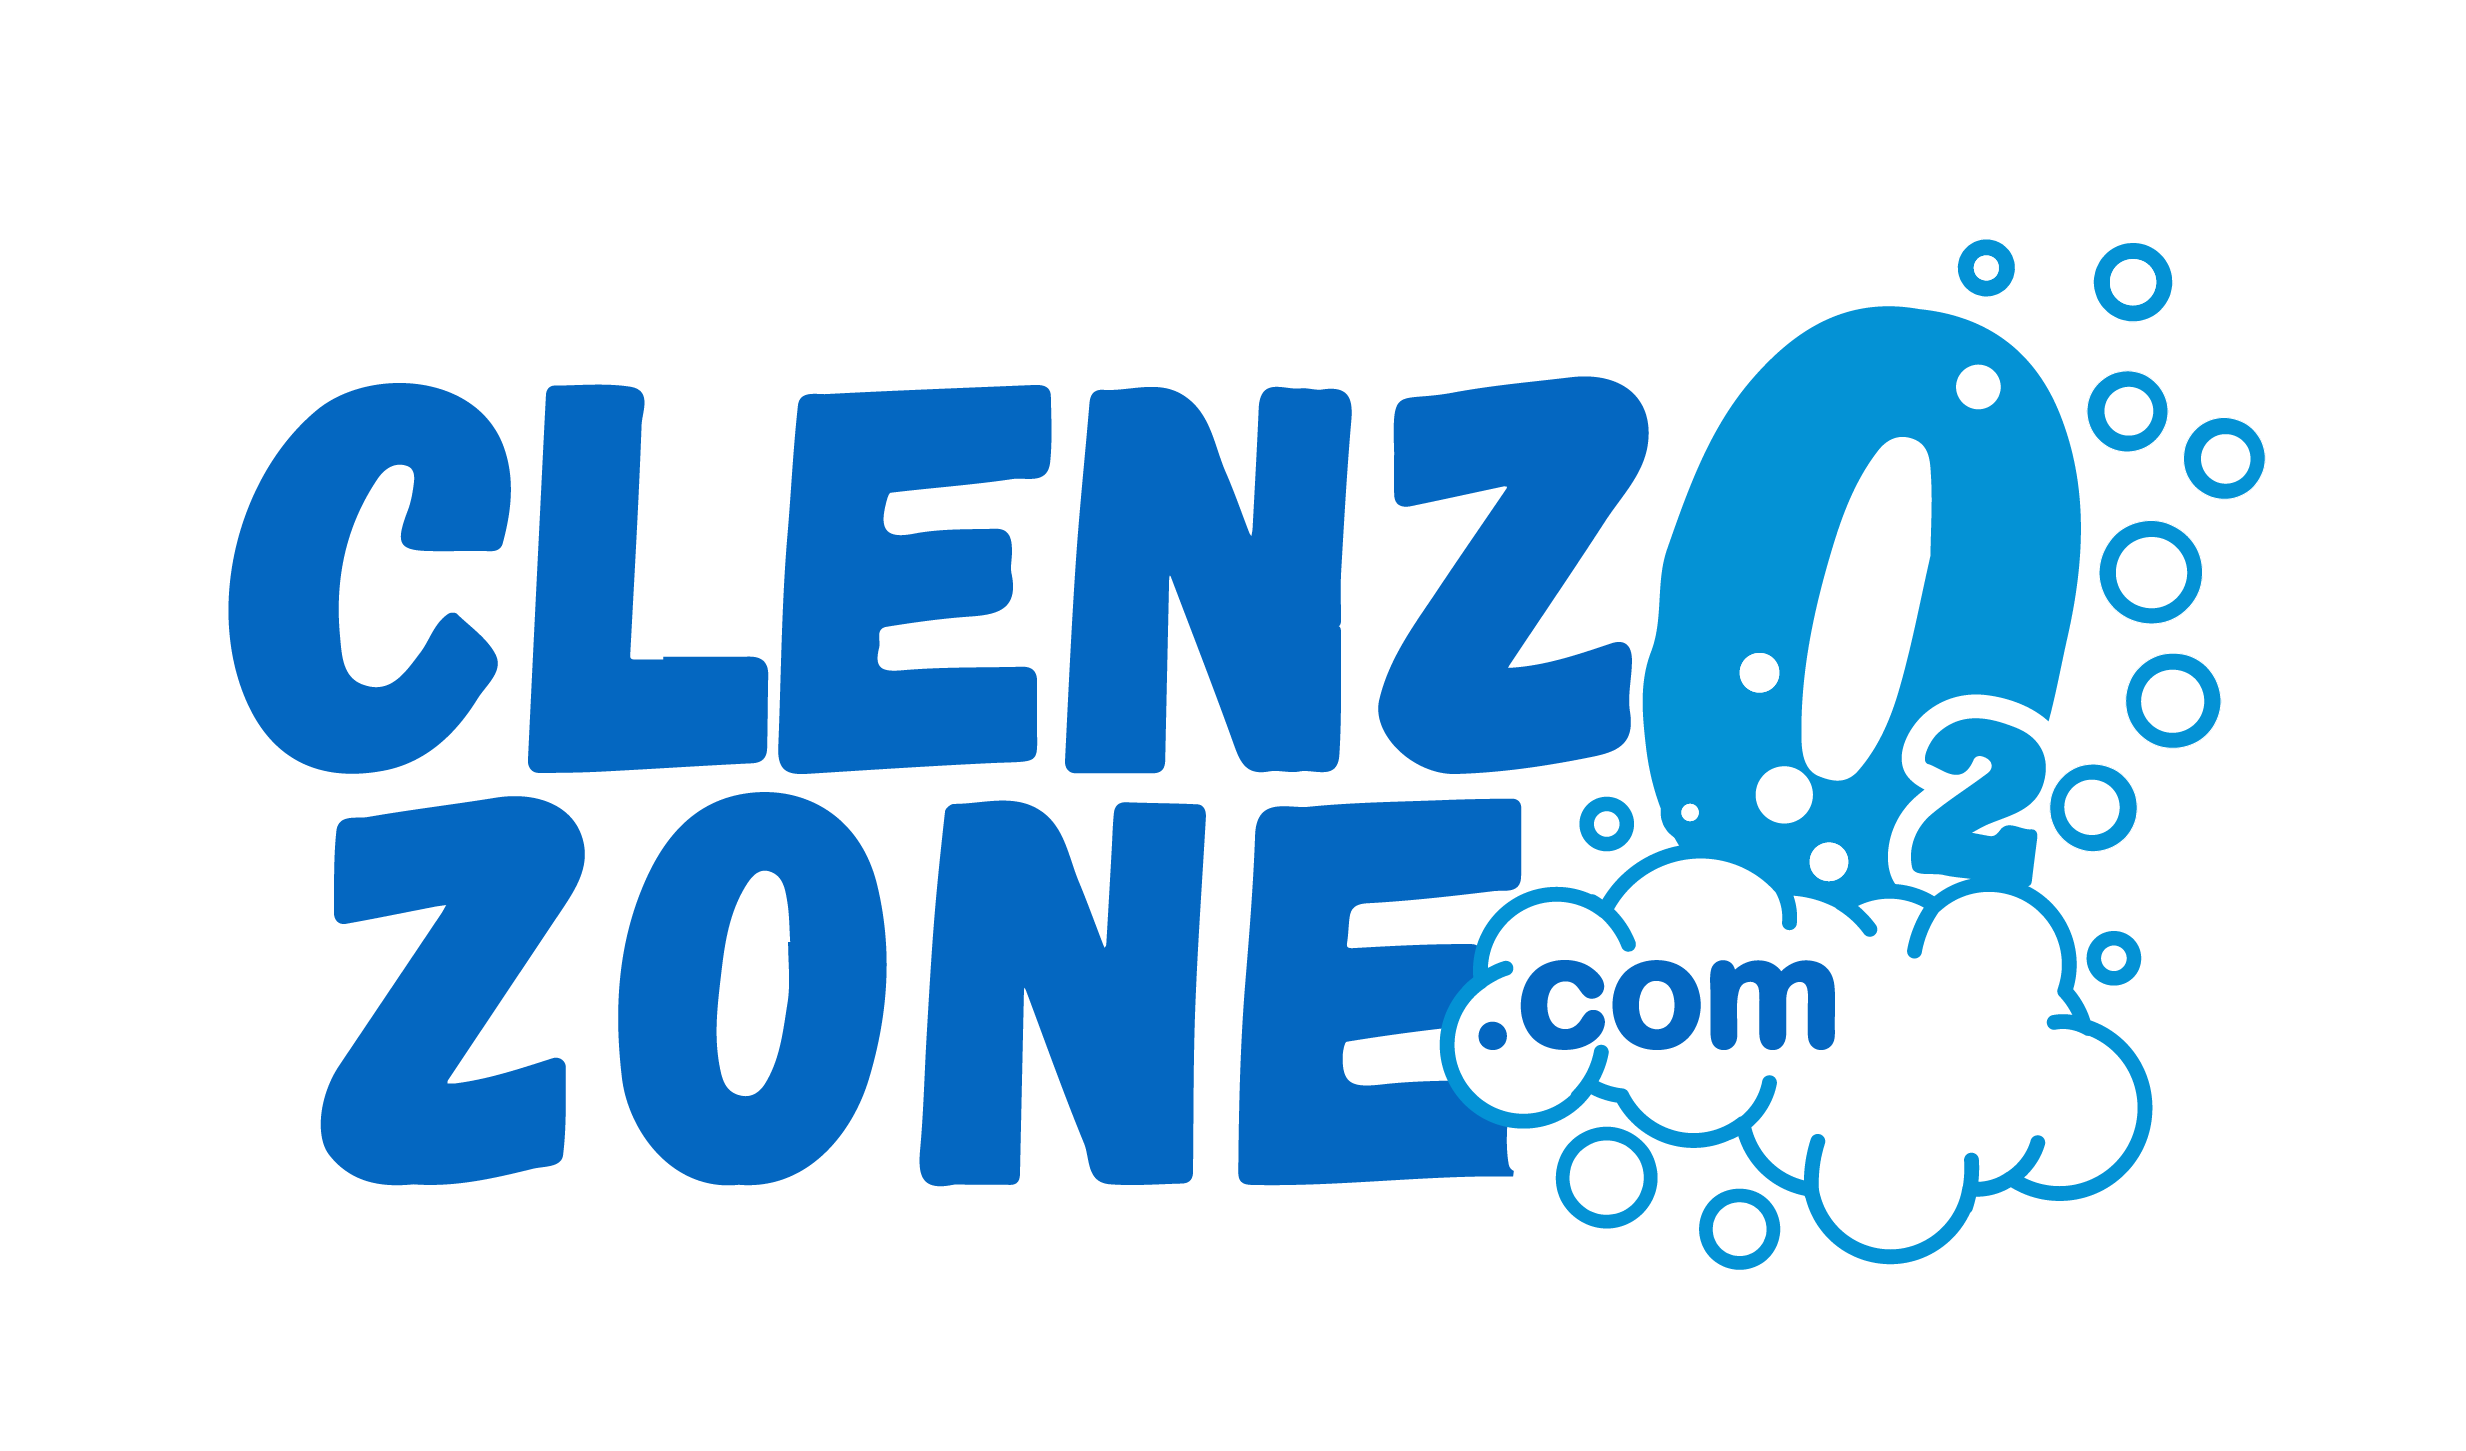 ClenzOzone